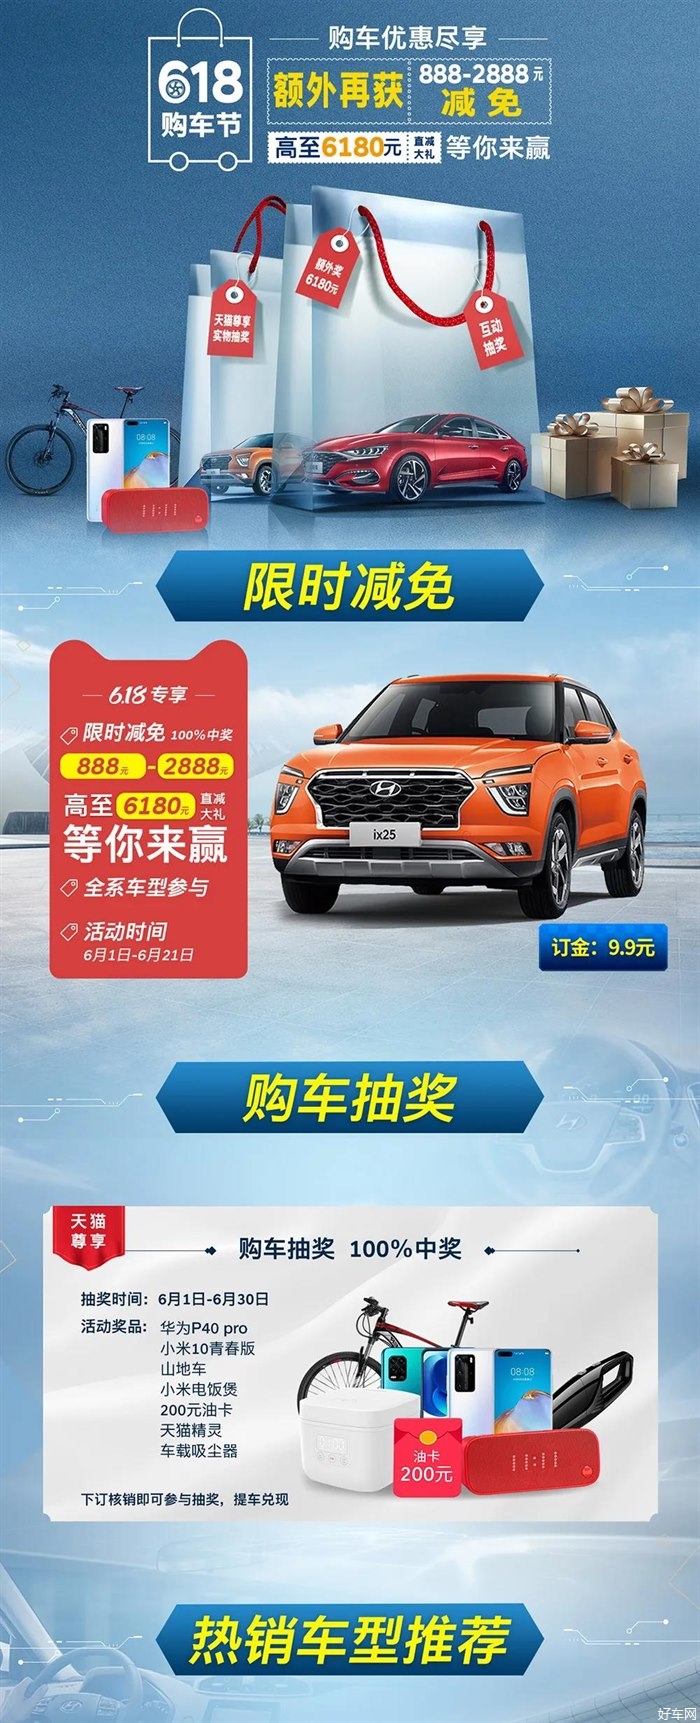 618 购车节 | 登录北京现代天猫官方旗舰店，购车最高直减6180元！